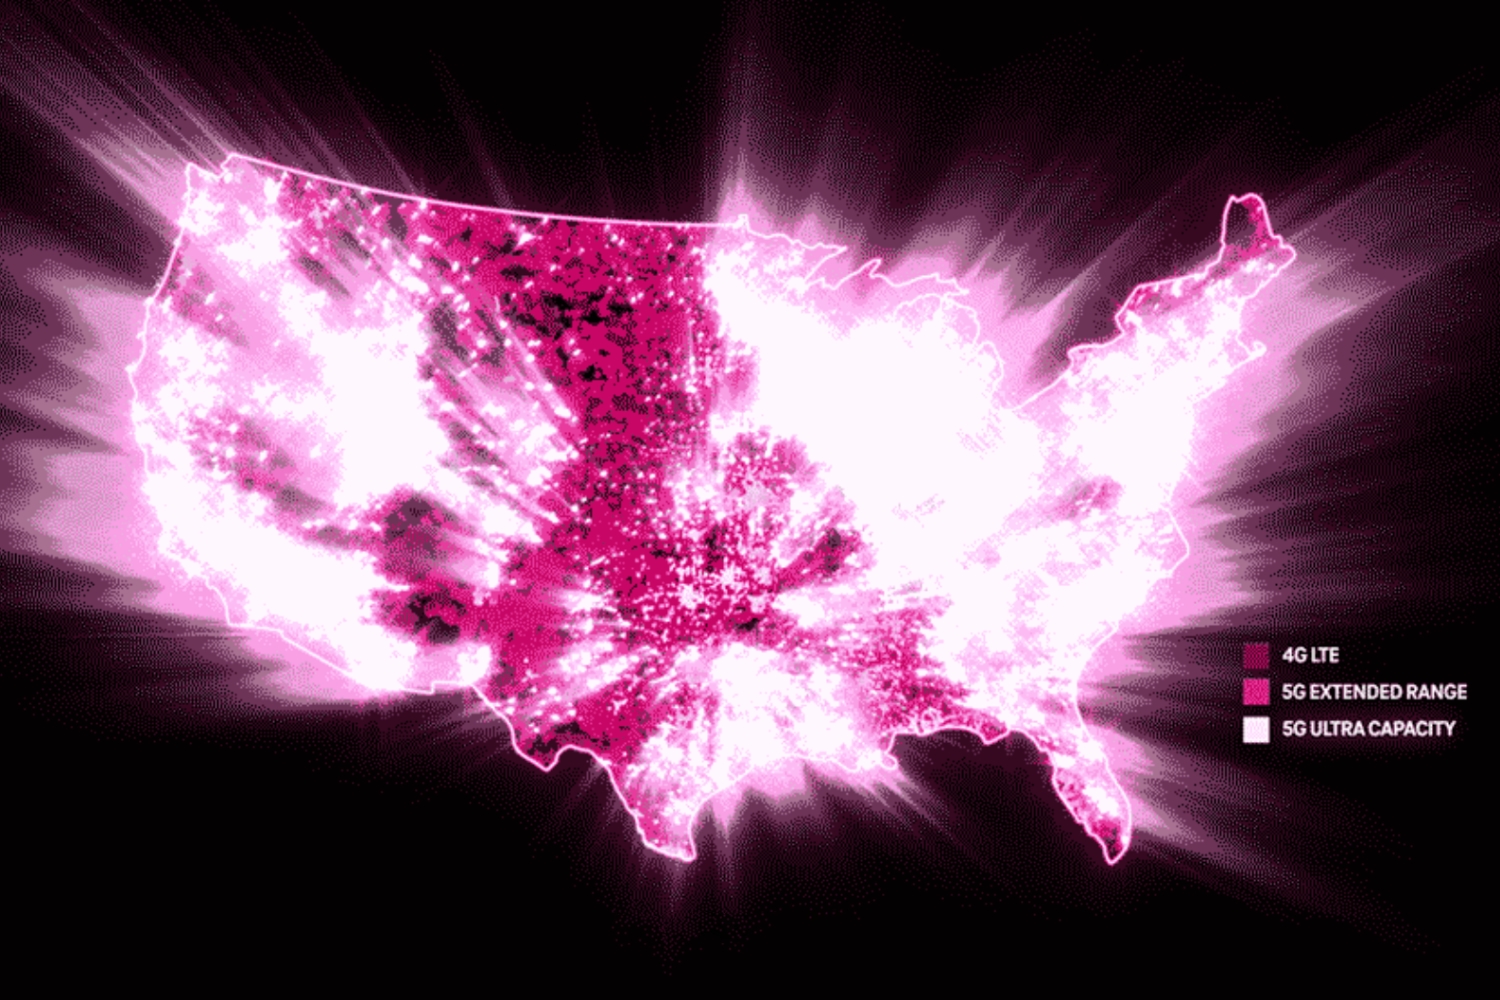 टी-मोबाइल के 5जी अल्ट्रा कैपेसिटी नेटवर्क विस्तार को दर्शाने वाला अमेरिकी मानचित्र।